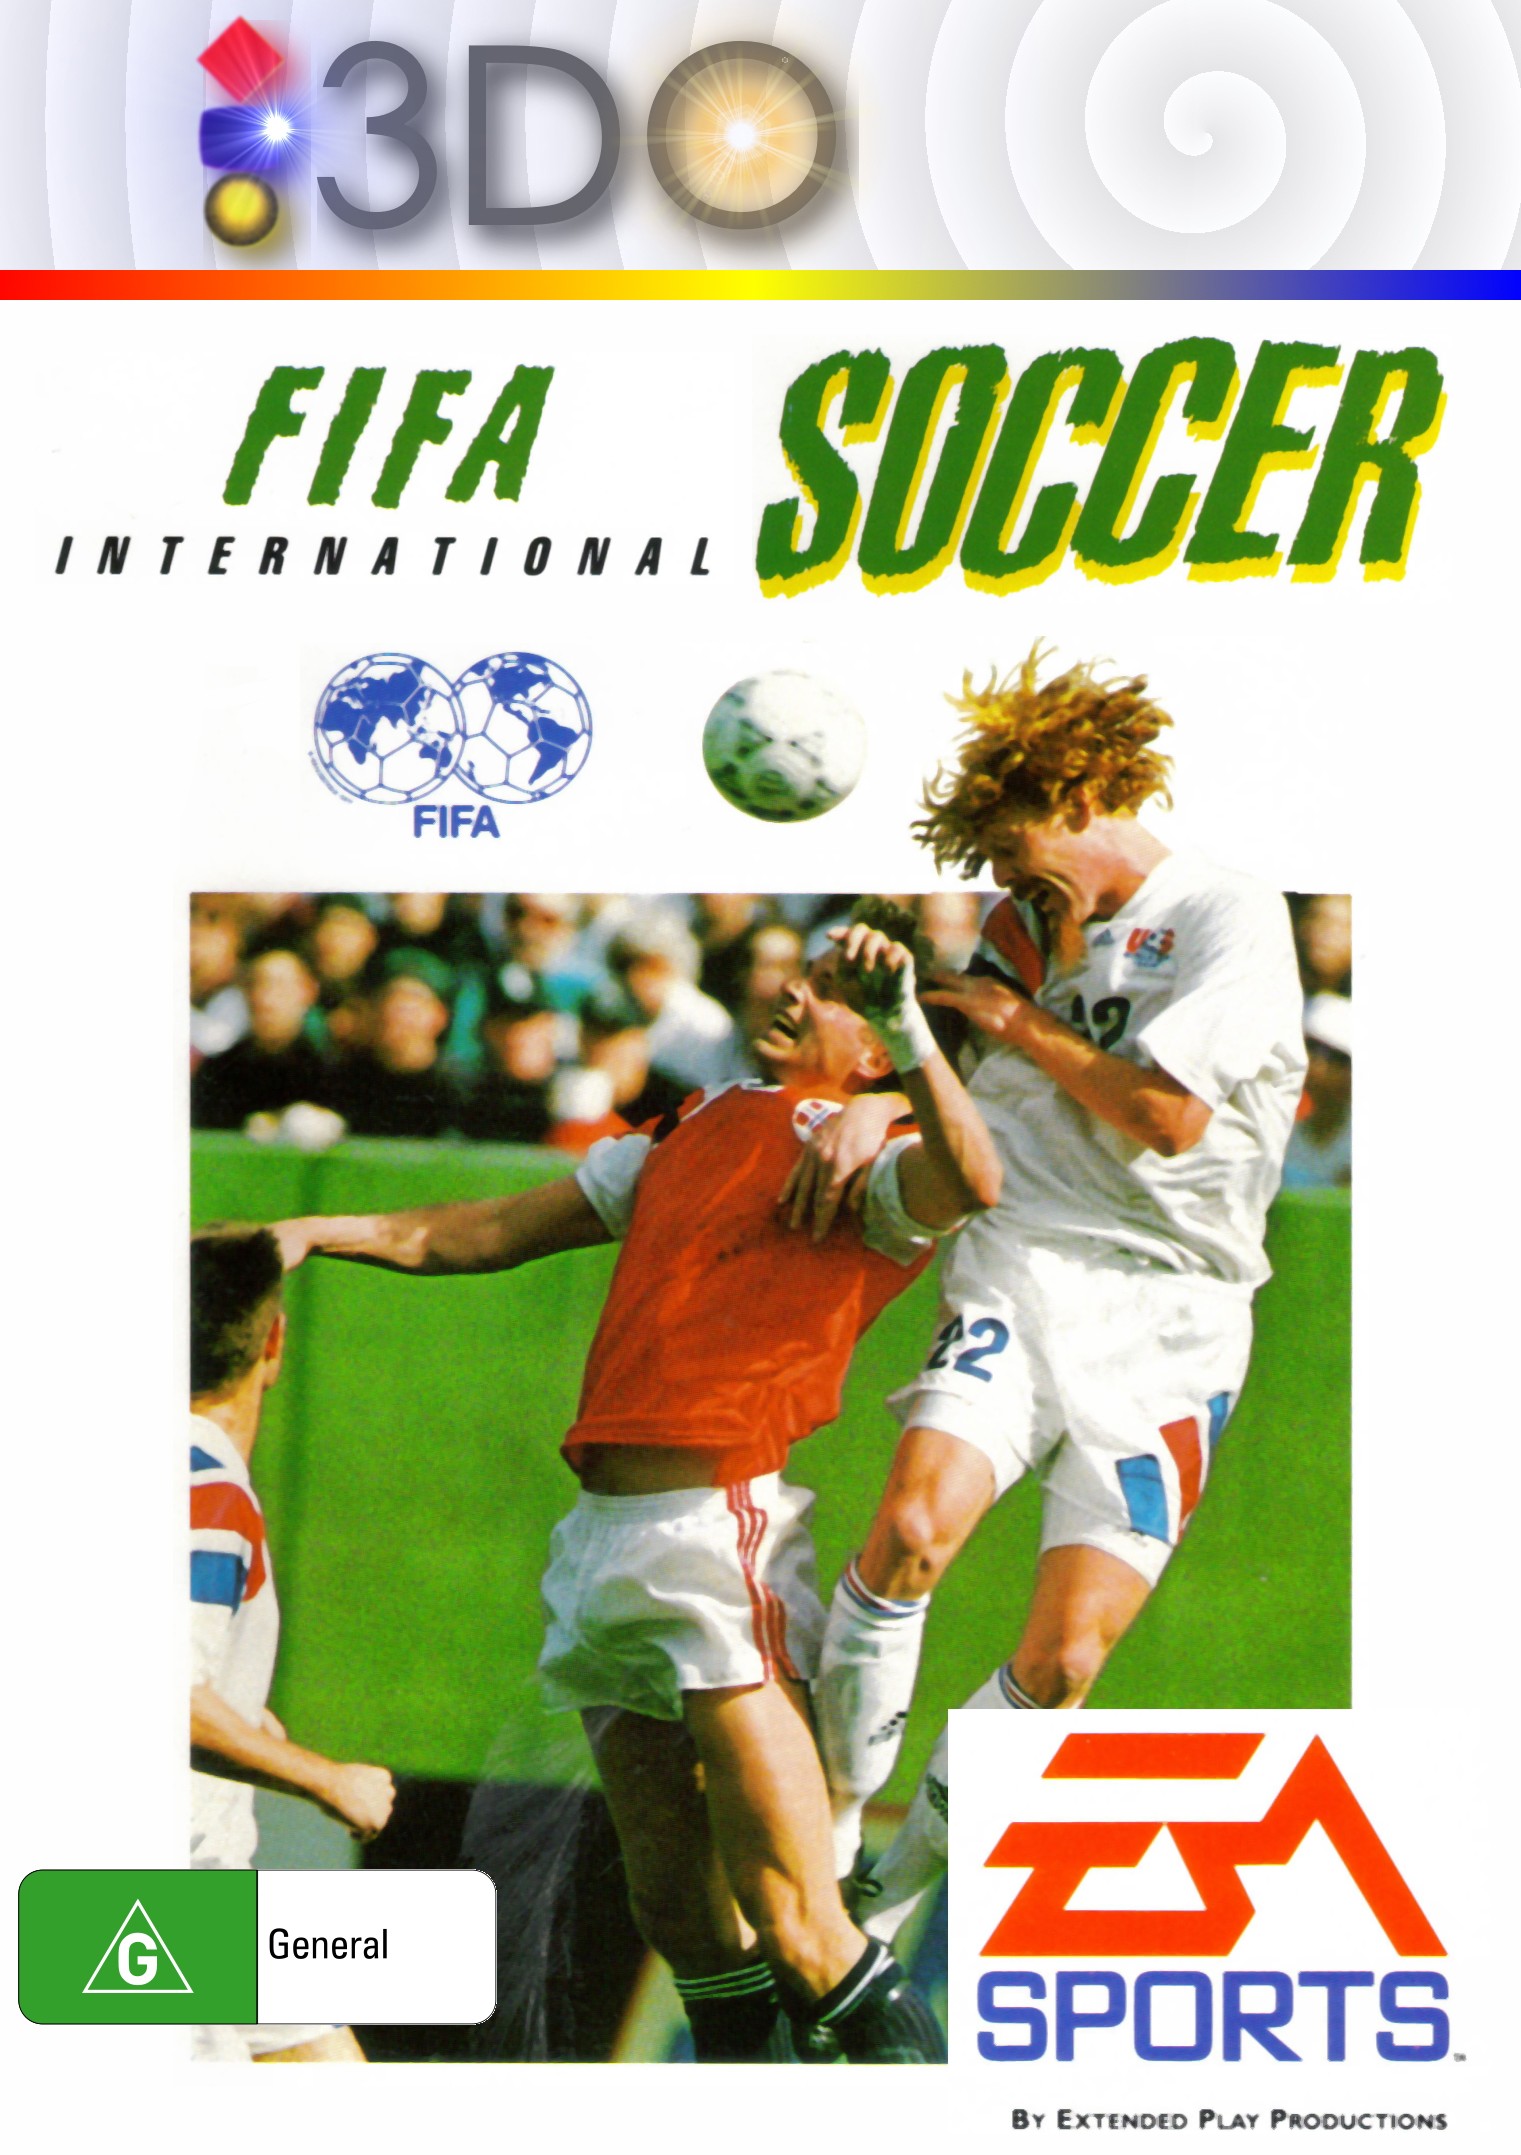 'FIFA: international Soccer'